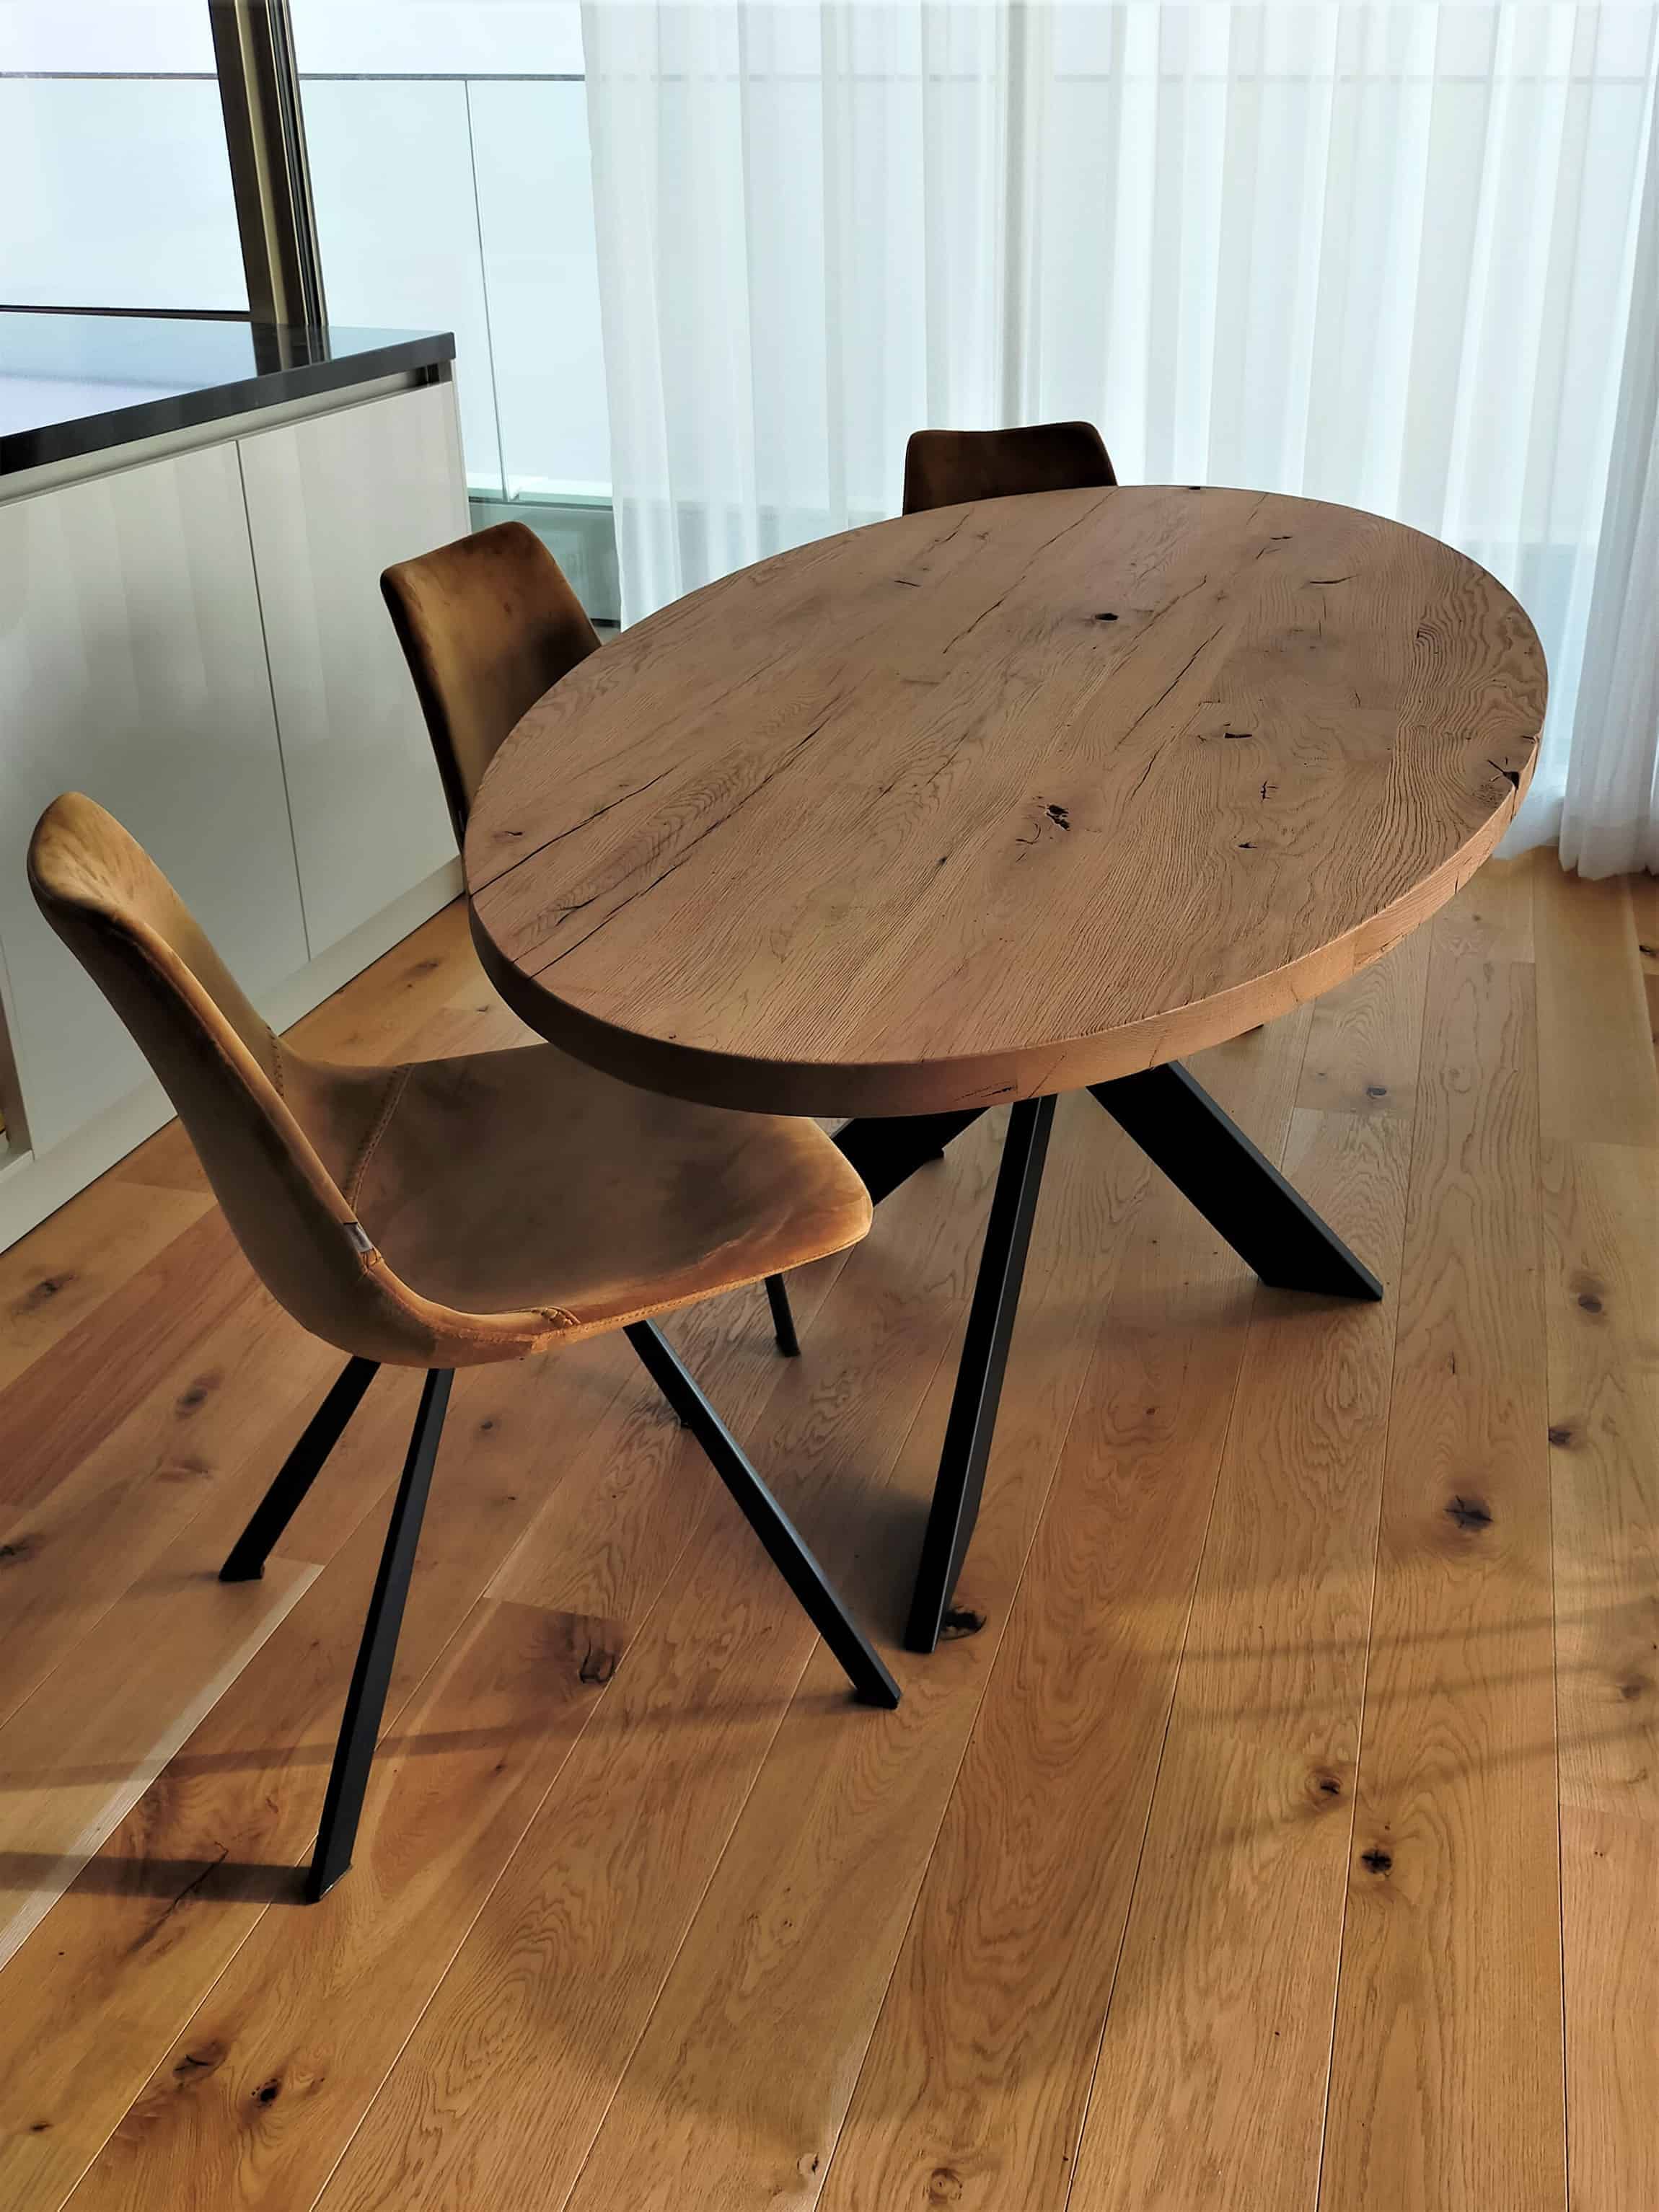 Ovale oud eiken tafel met matrix koker 10x3cm onderstel.